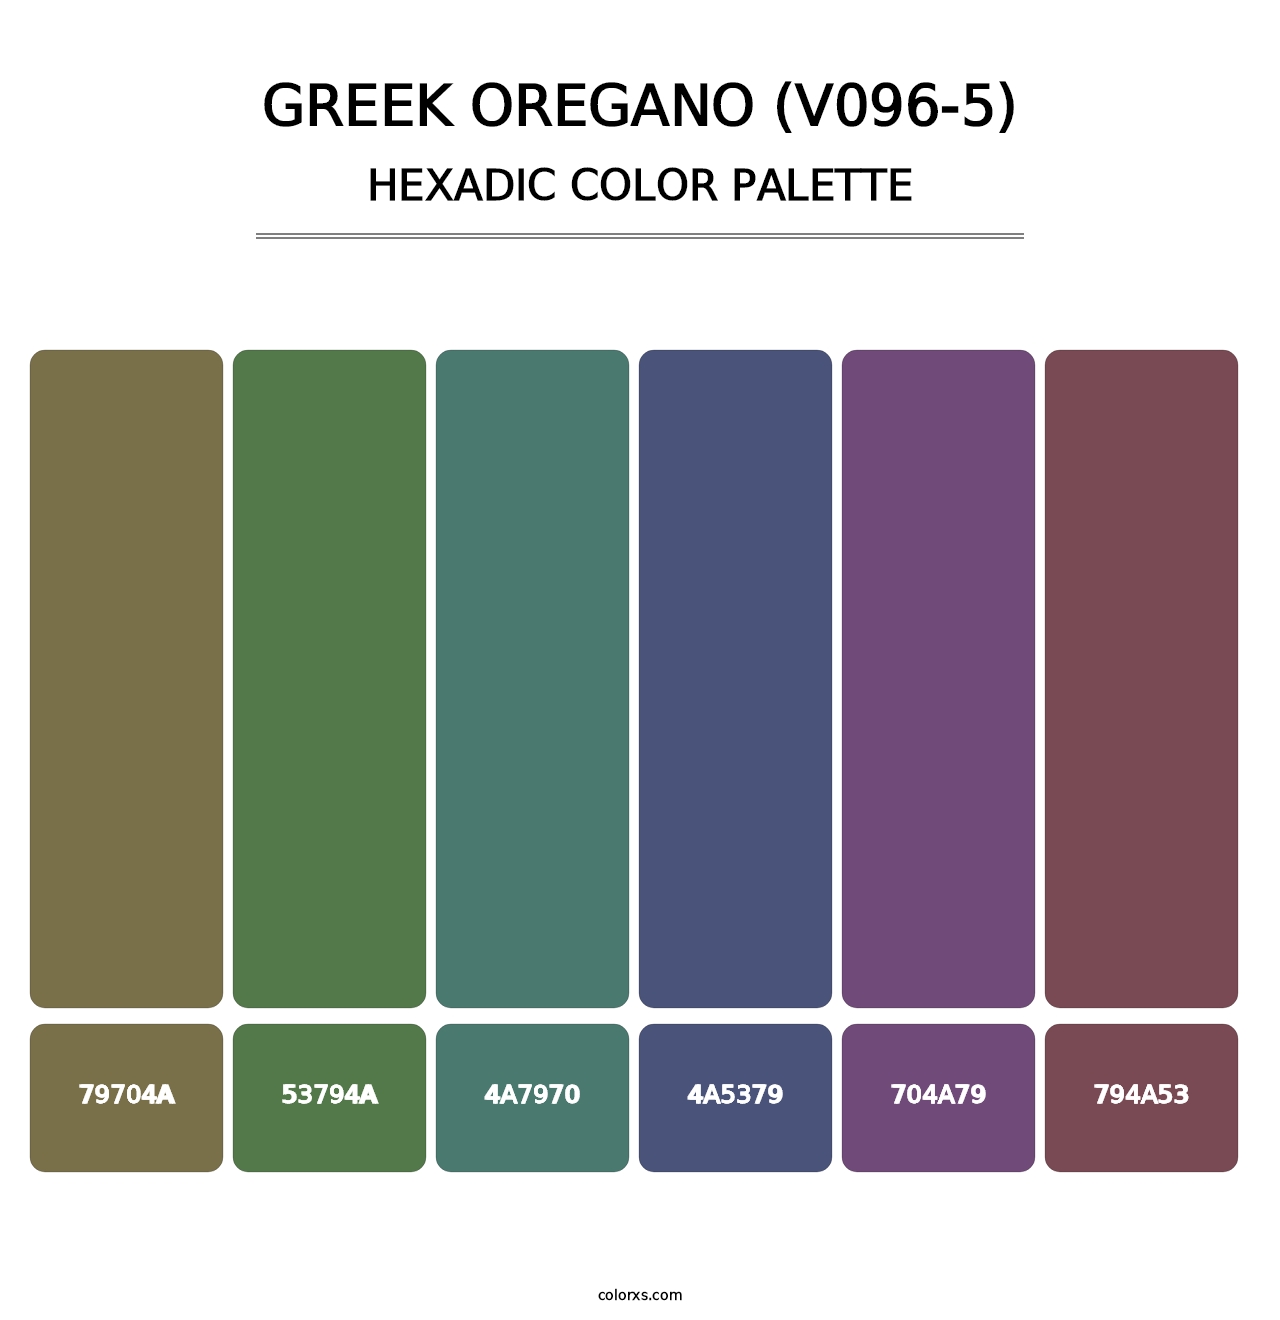 Greek Oregano (V096-5) - Hexadic Color Palette